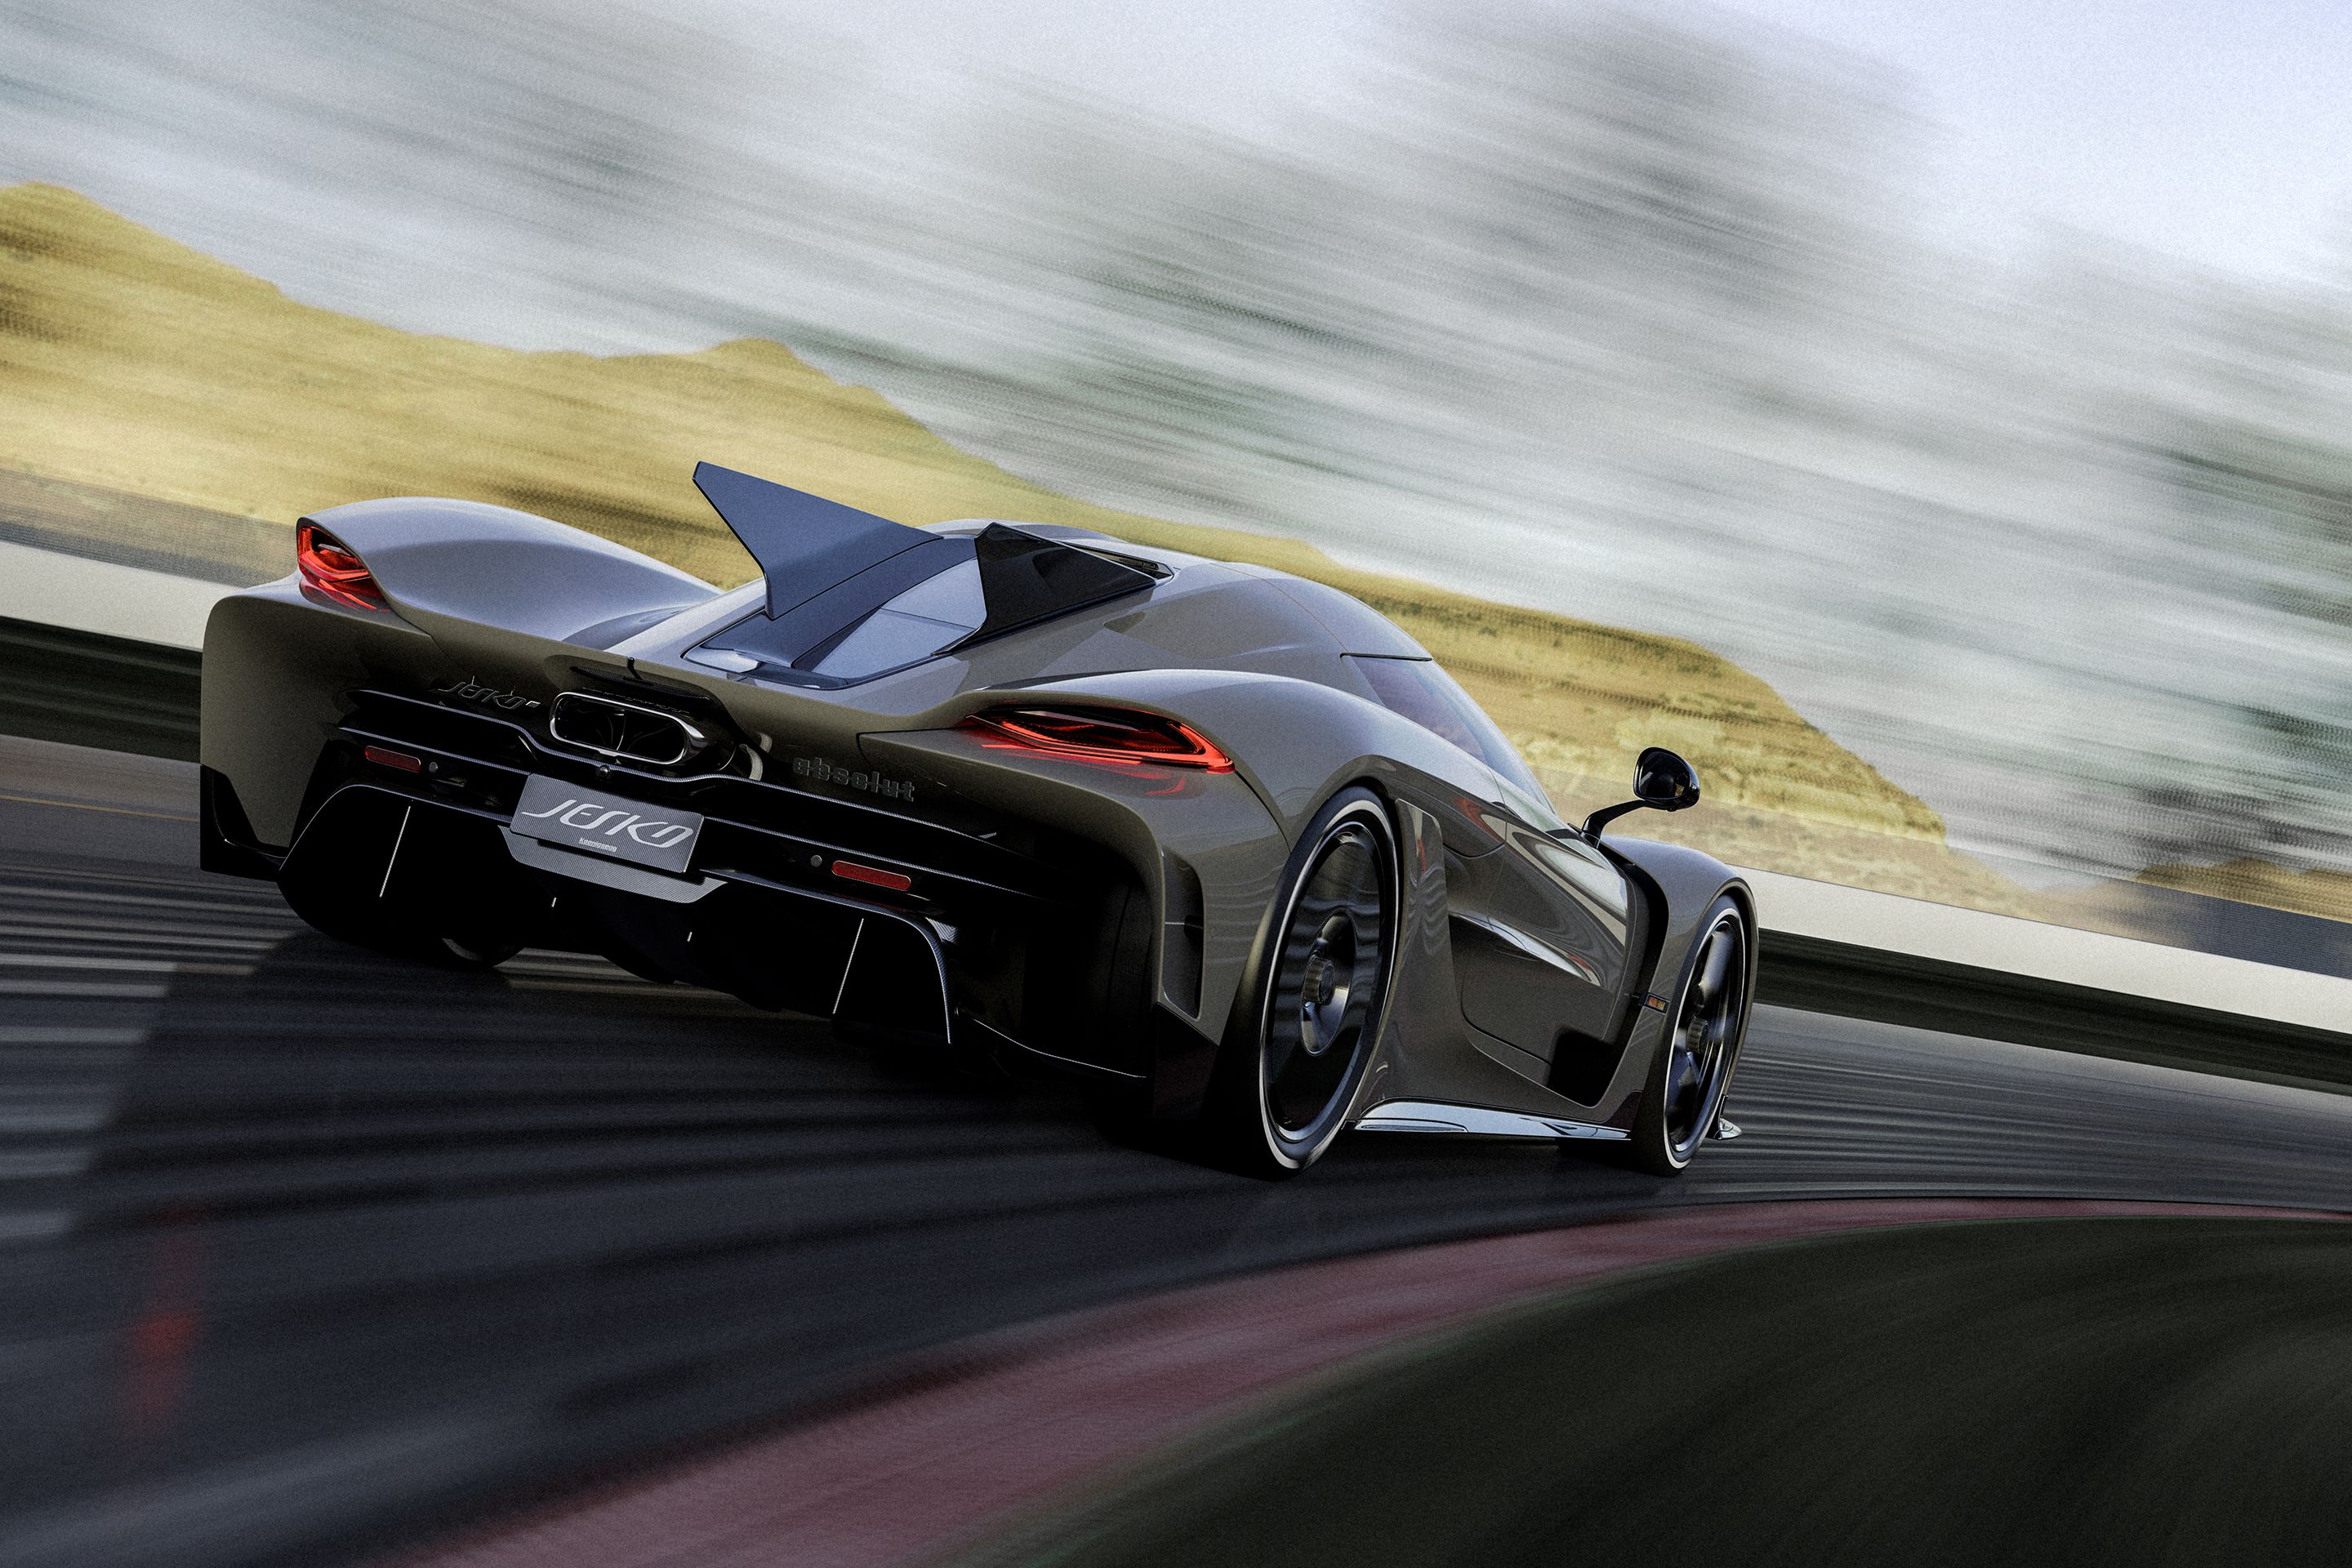 Топ быстрых машин в мире. Кенигсегг Йеско 2020. Гиперкар Koenigsegg 2020. Кенигсегг 2022. Кенигсегг Джеско Абсолют.